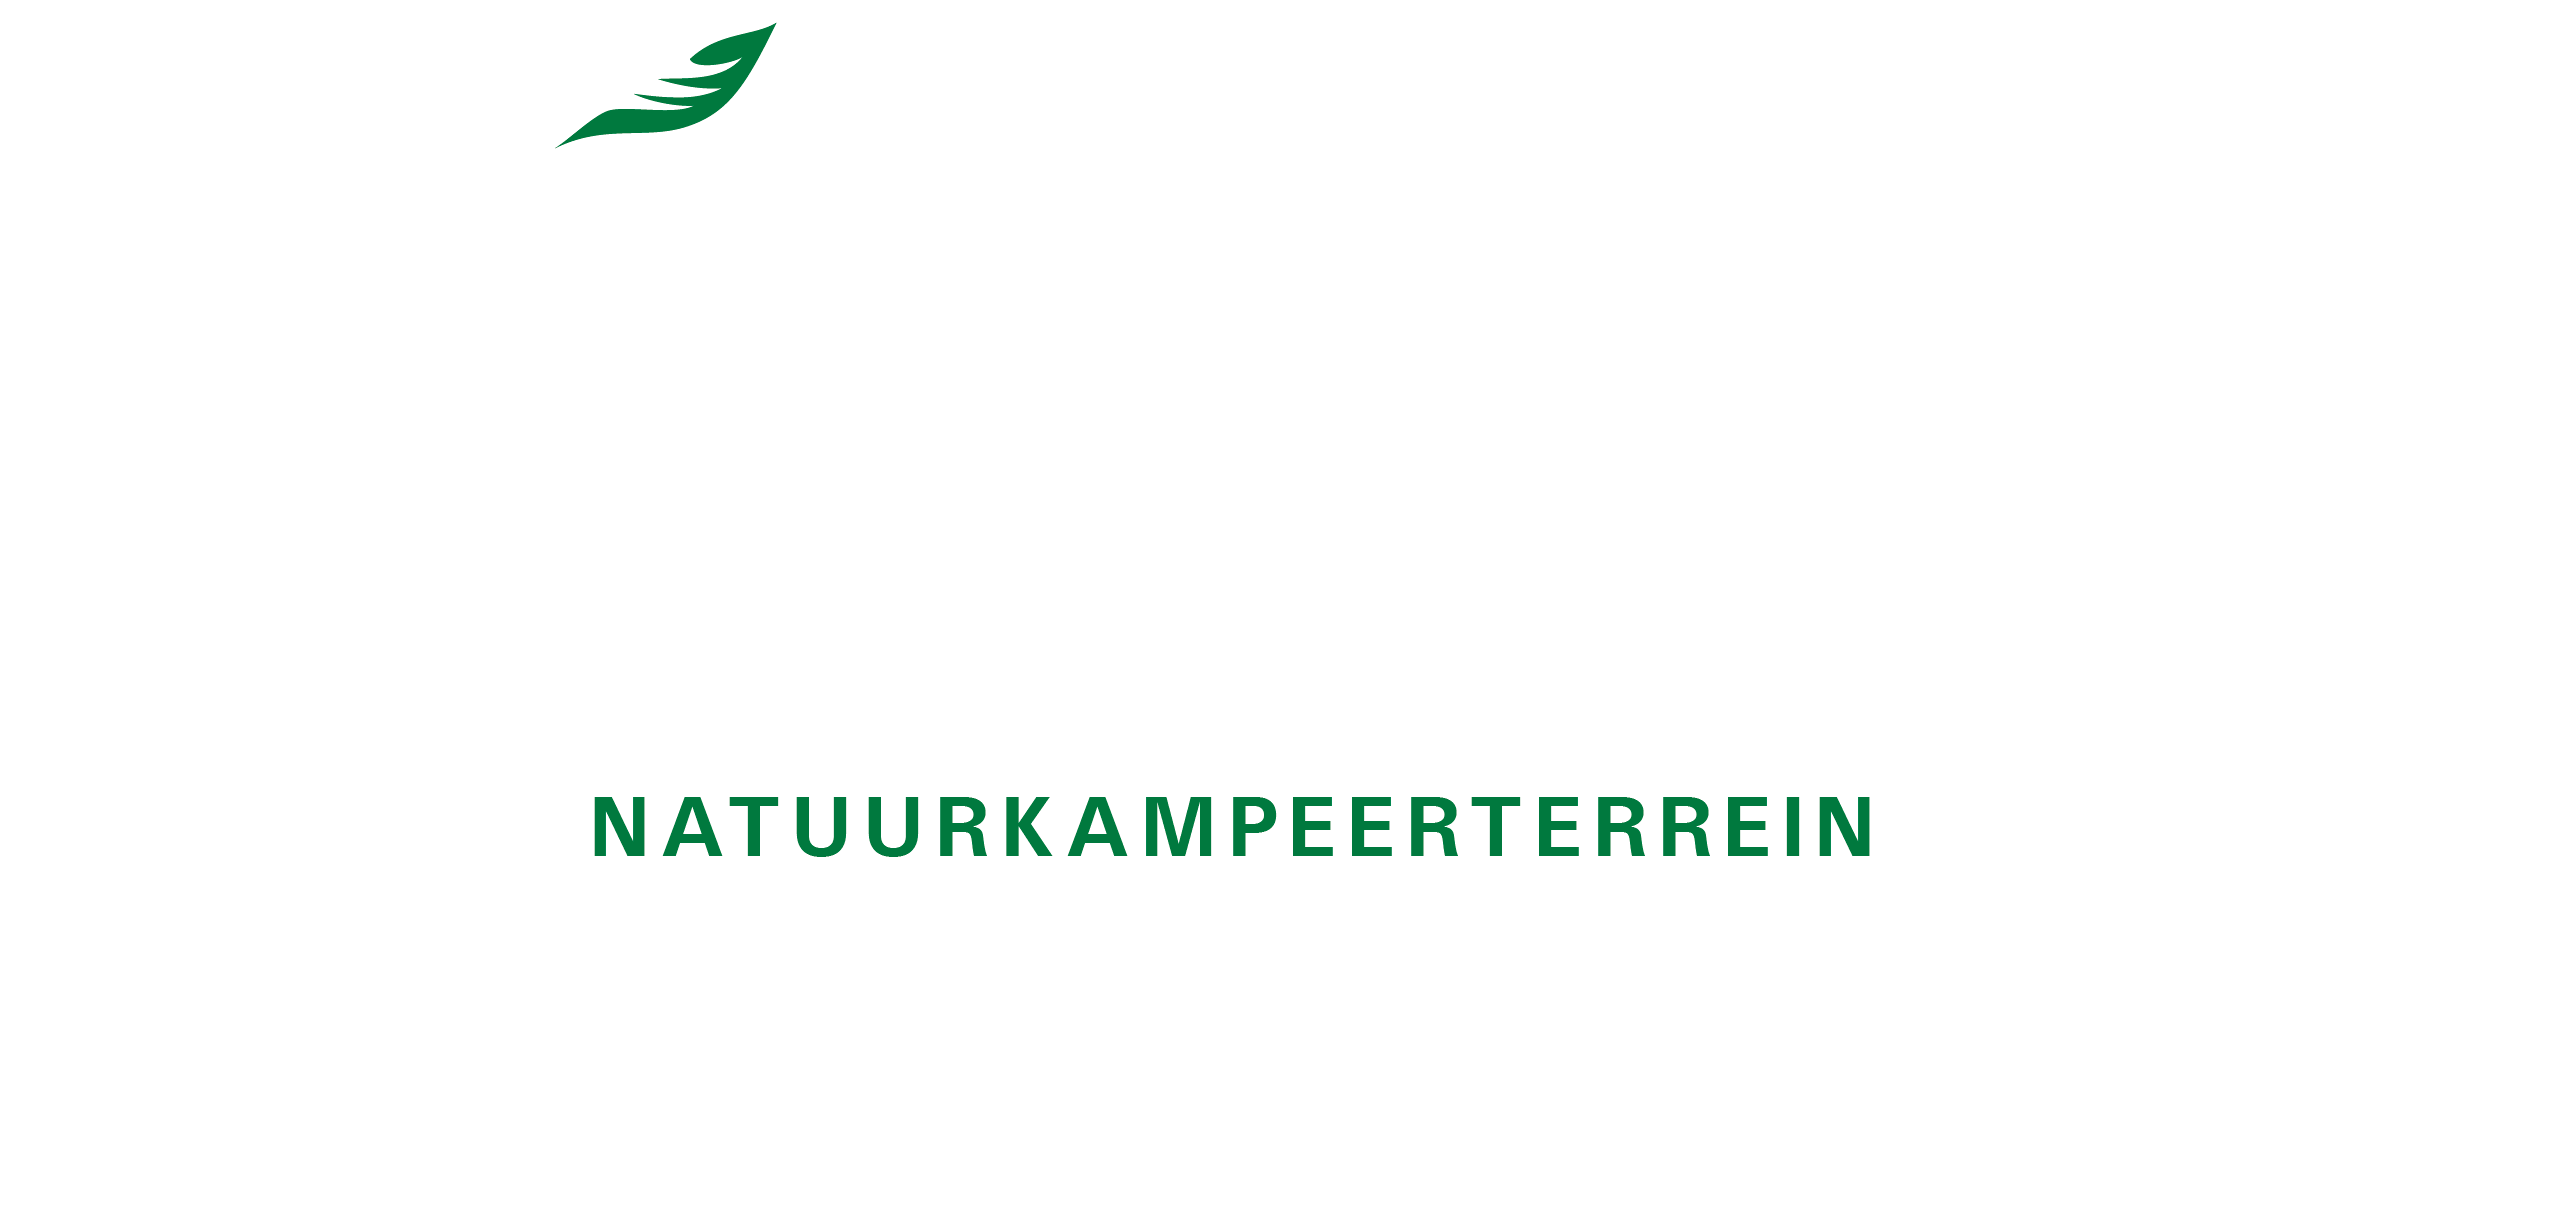 Kampeerterrein Hoeve Krekelberg Logo